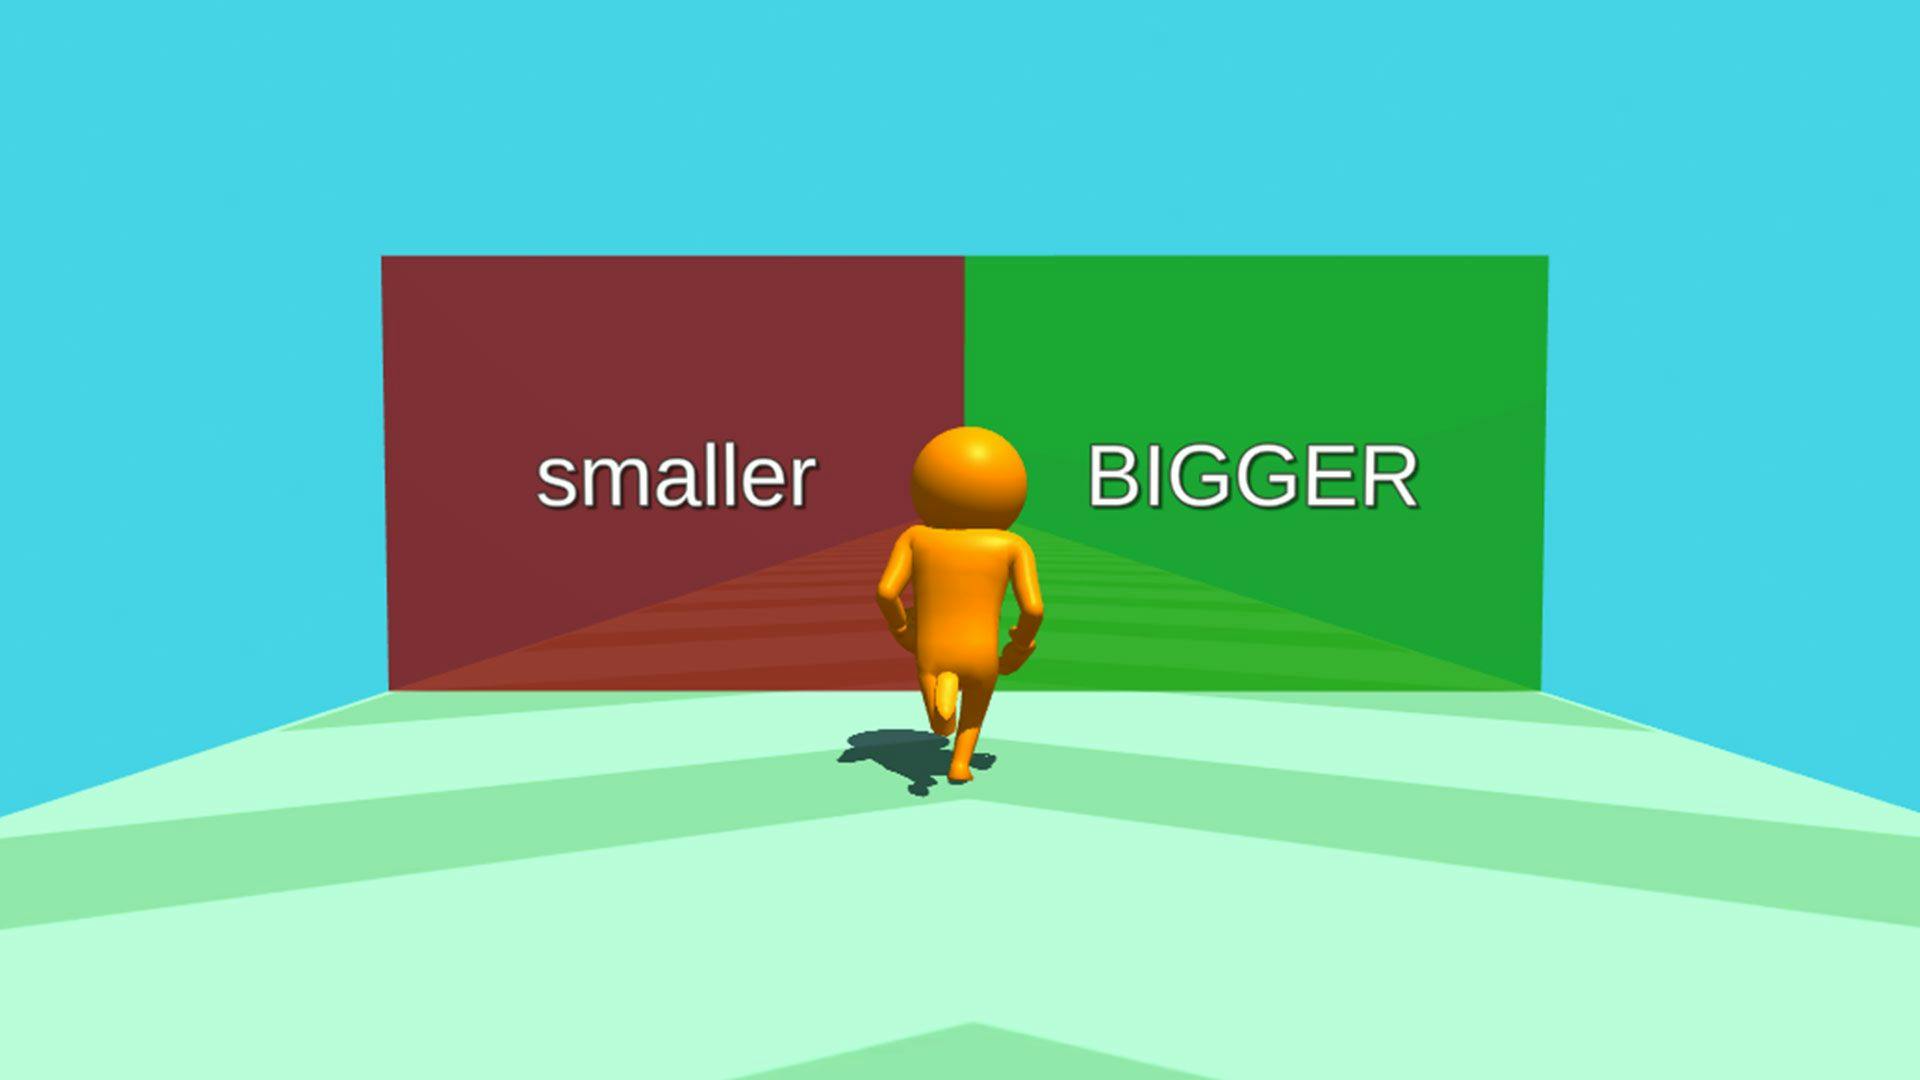 Personaje del juego corriendo hacia un marco más pequeño o más grande